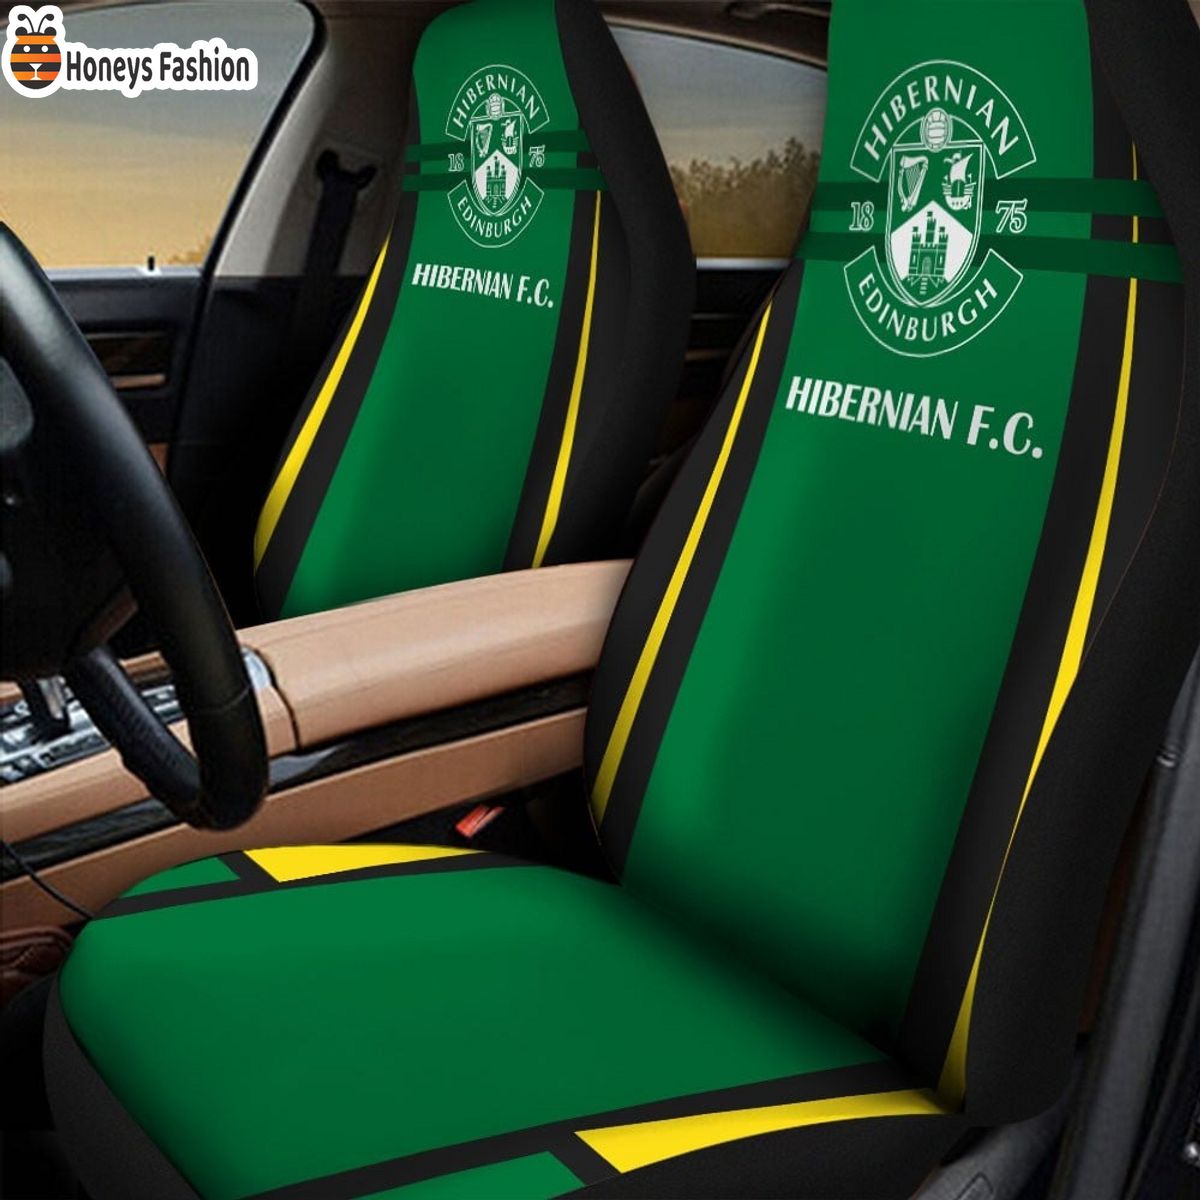 Hibernian F.C. car seat cover